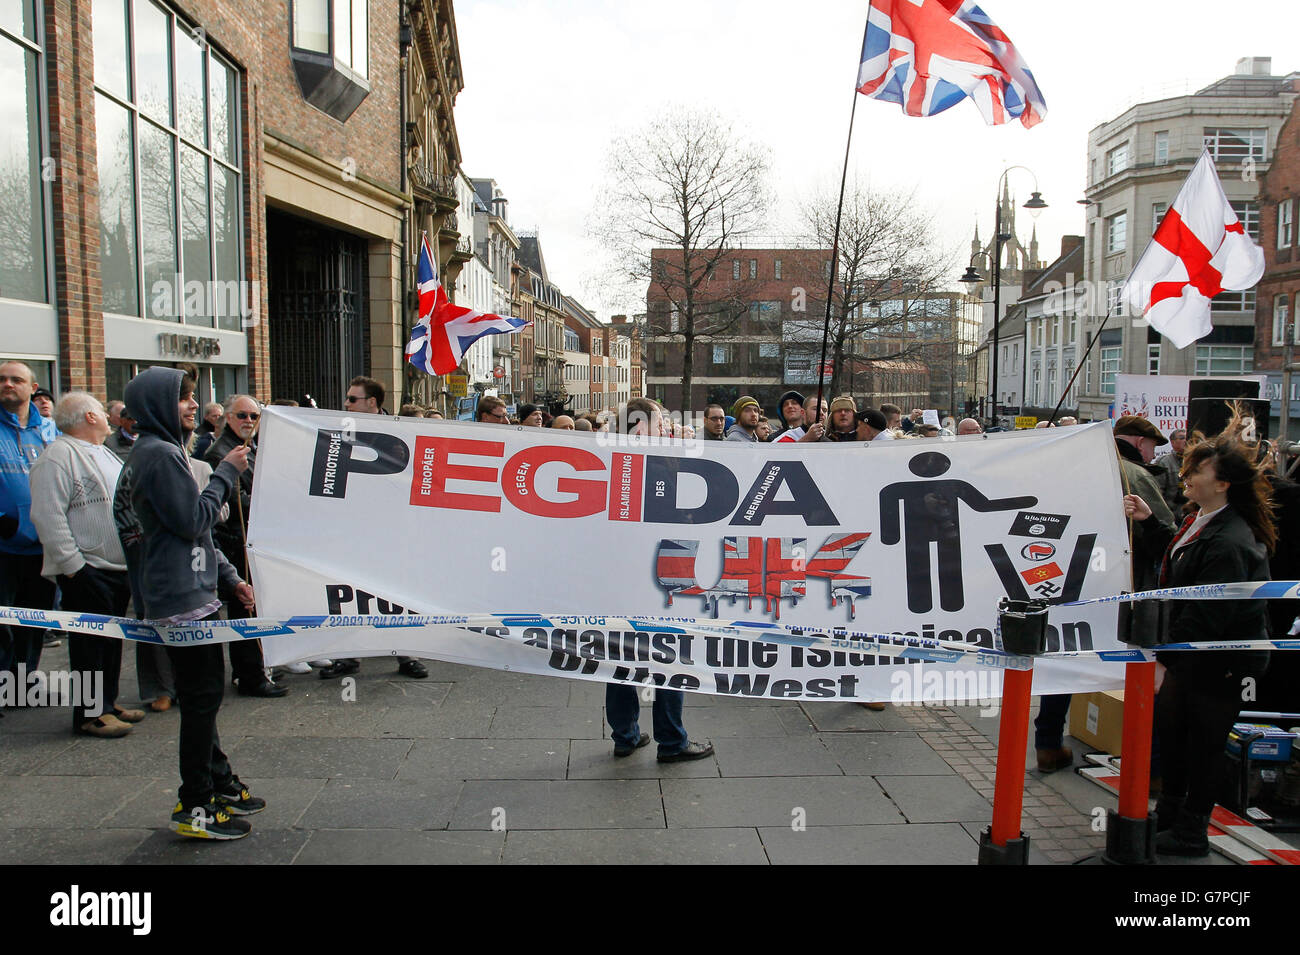 Rallye Pegida et contre-démonstration.Les manifestants lors de la première manifestation anti-Islam du rassemblement Pegida dans le pays, dans le centre-ville de Newscastle. Banque D'Images